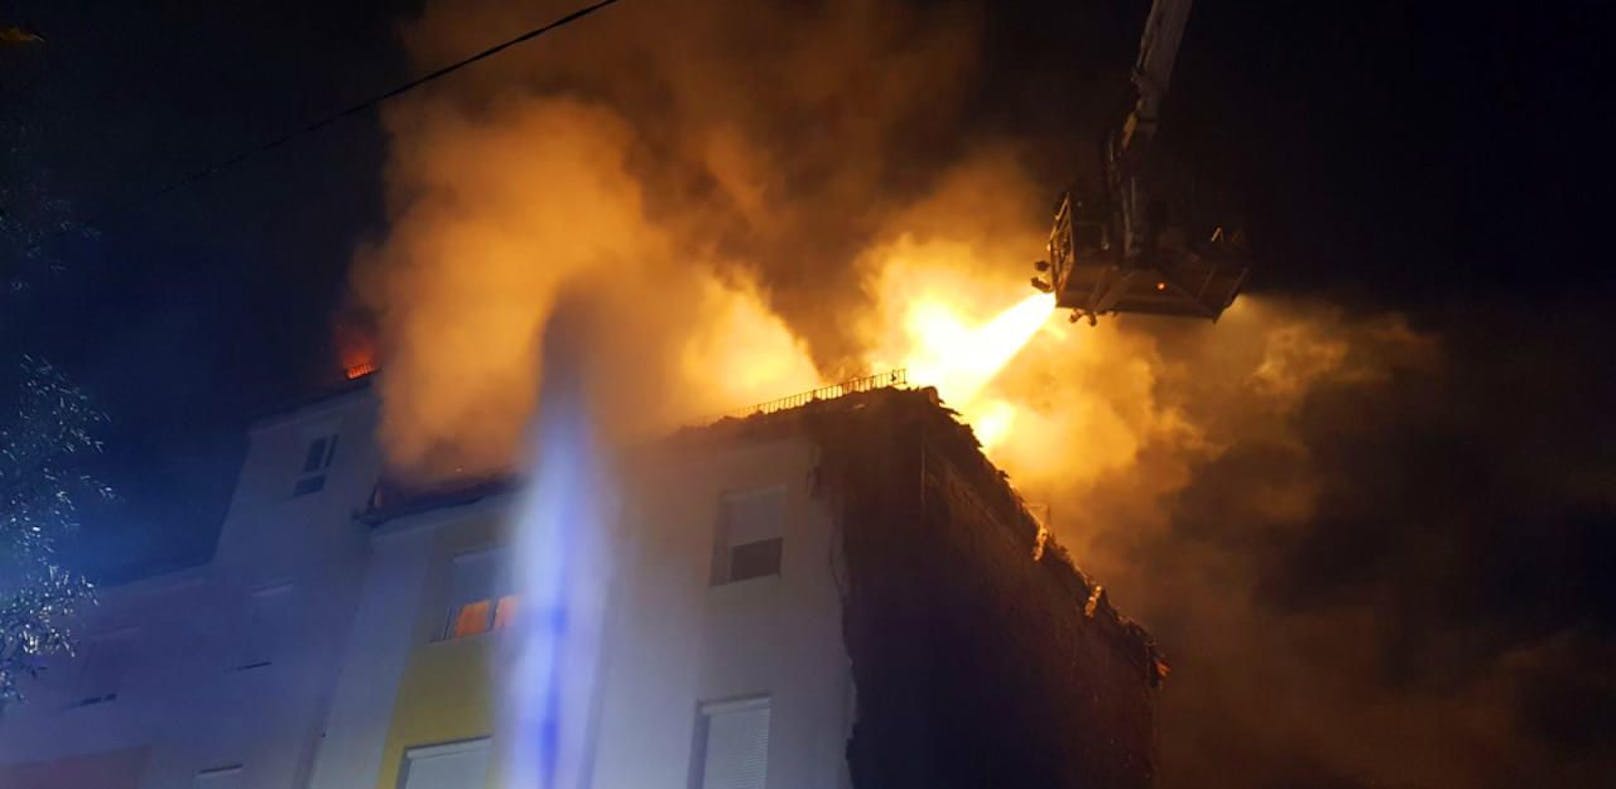 Großbrand in St. Pölten: Ein Mehrparteienhaus musste evakuiert werden. Eventuelle Brandstiftung.